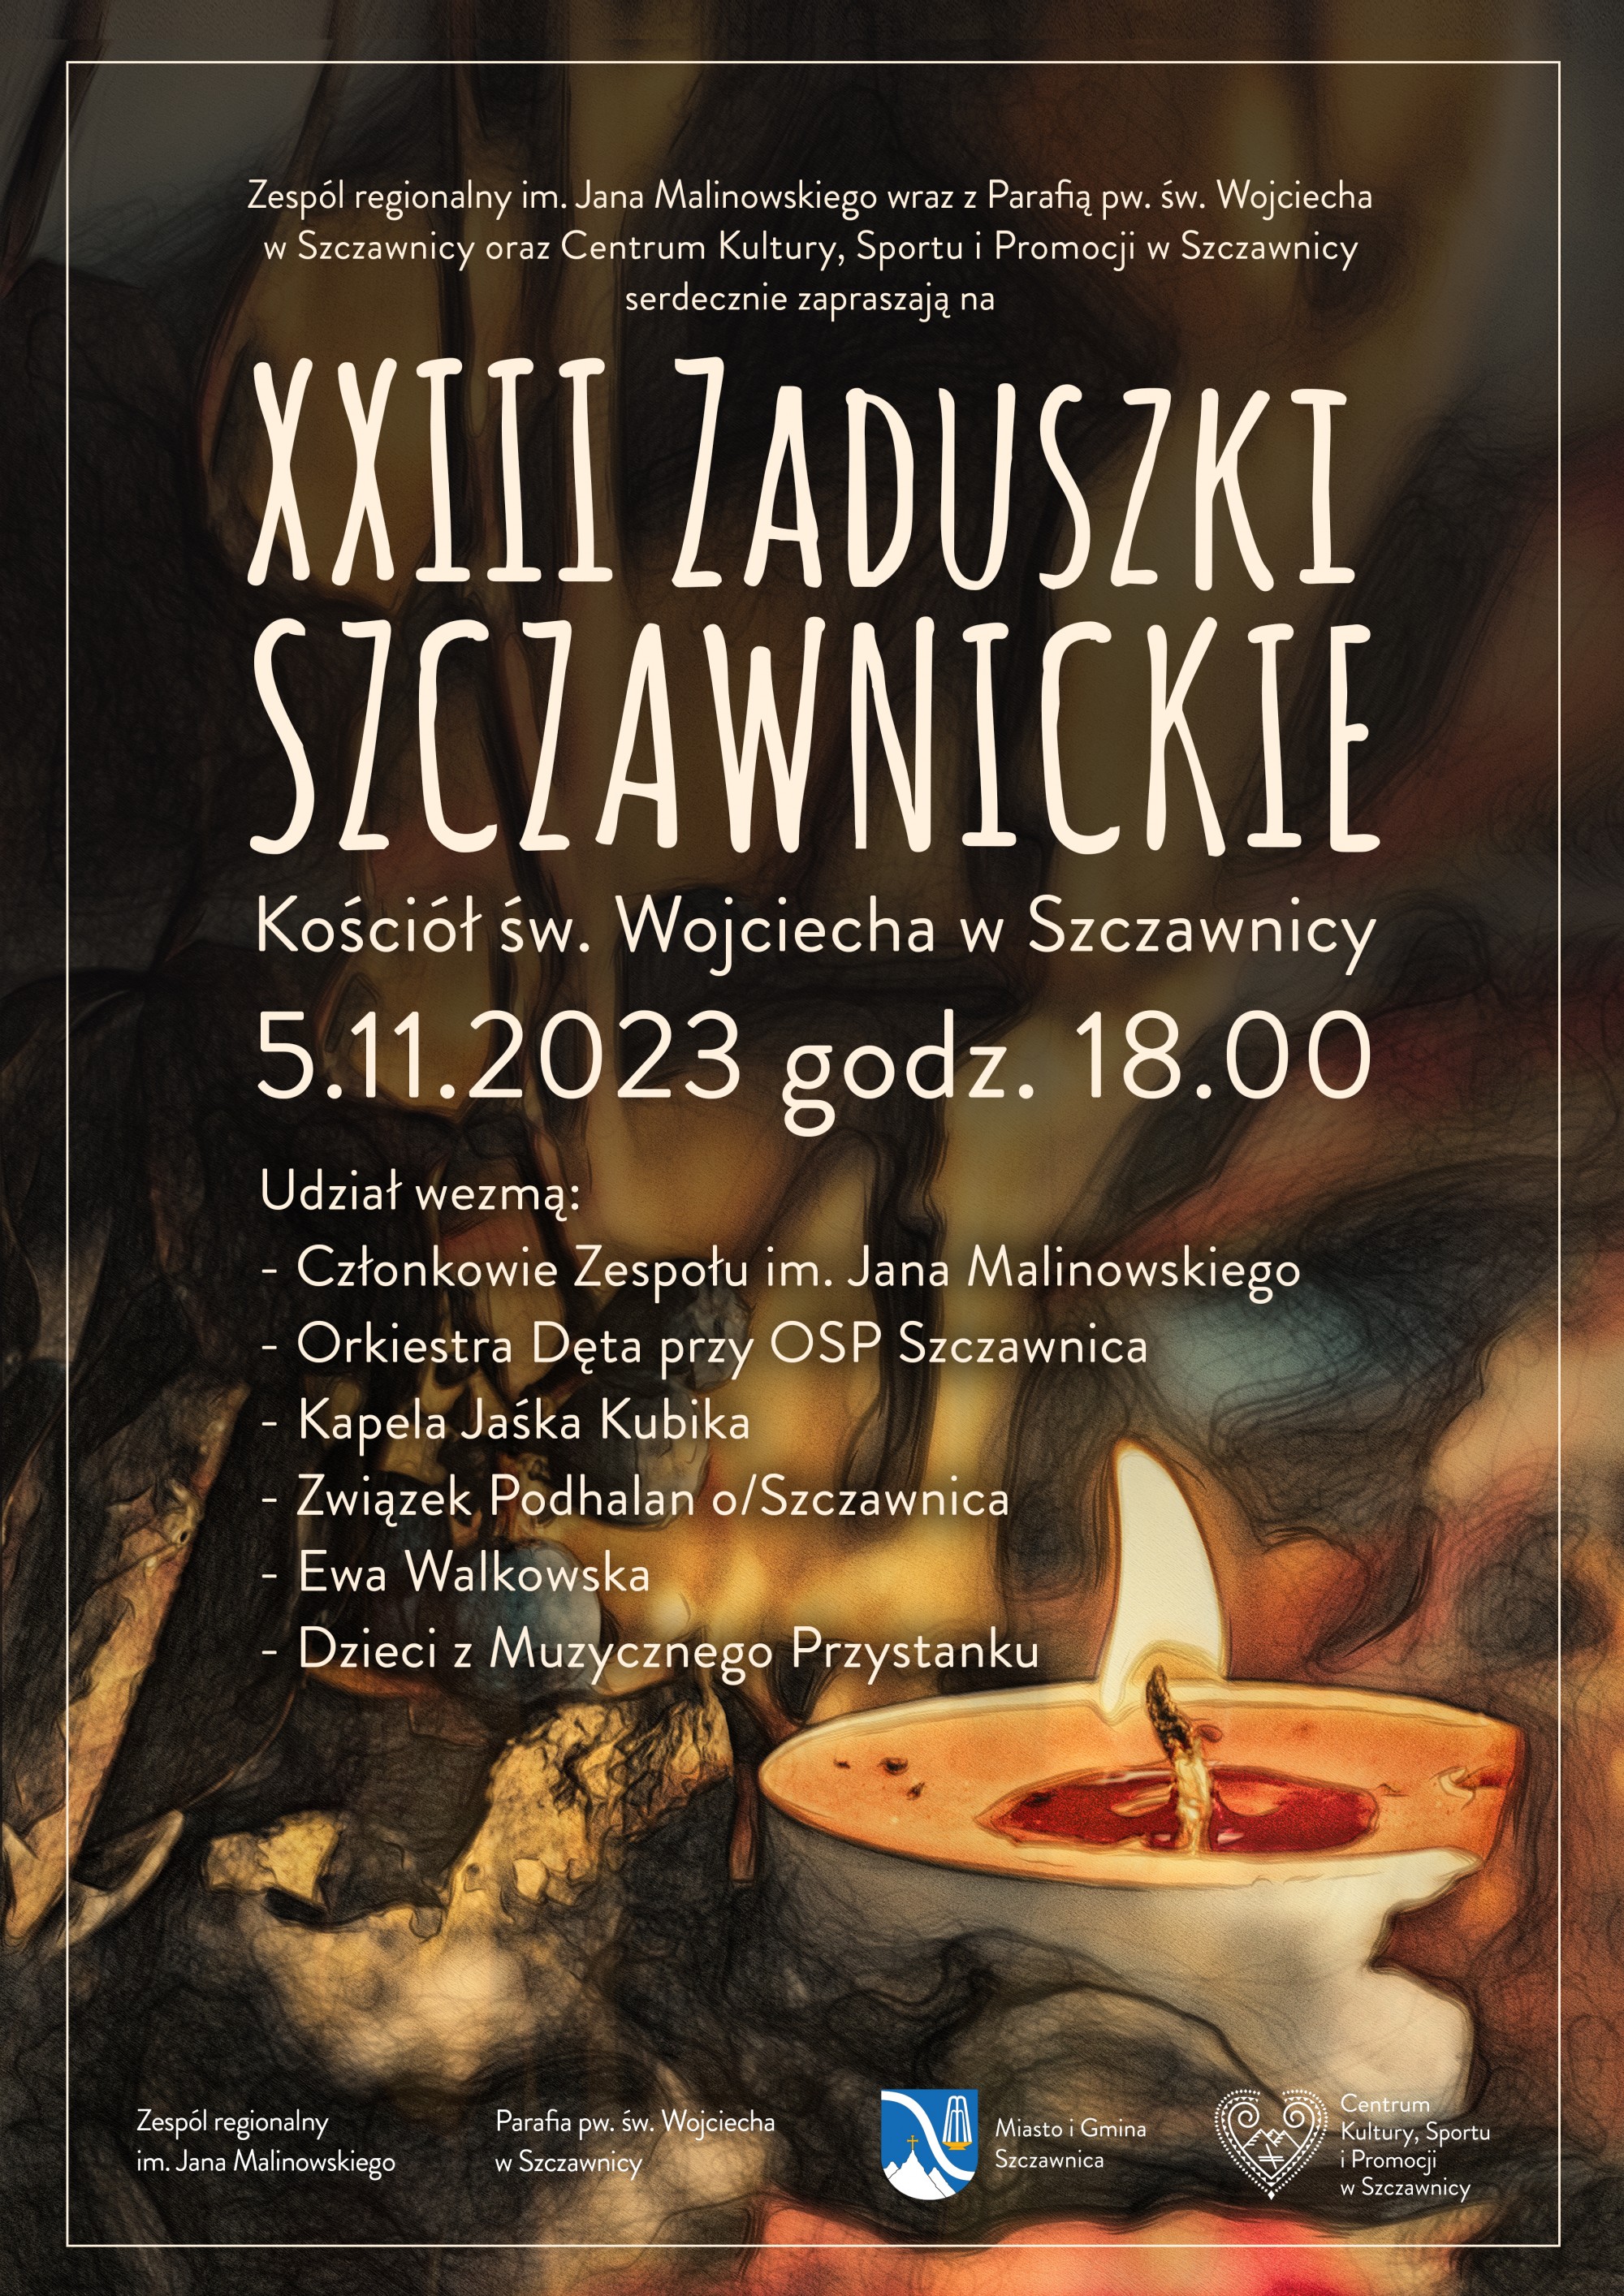 5.11.2023 - XXIII Zaduszki Szczawnickie